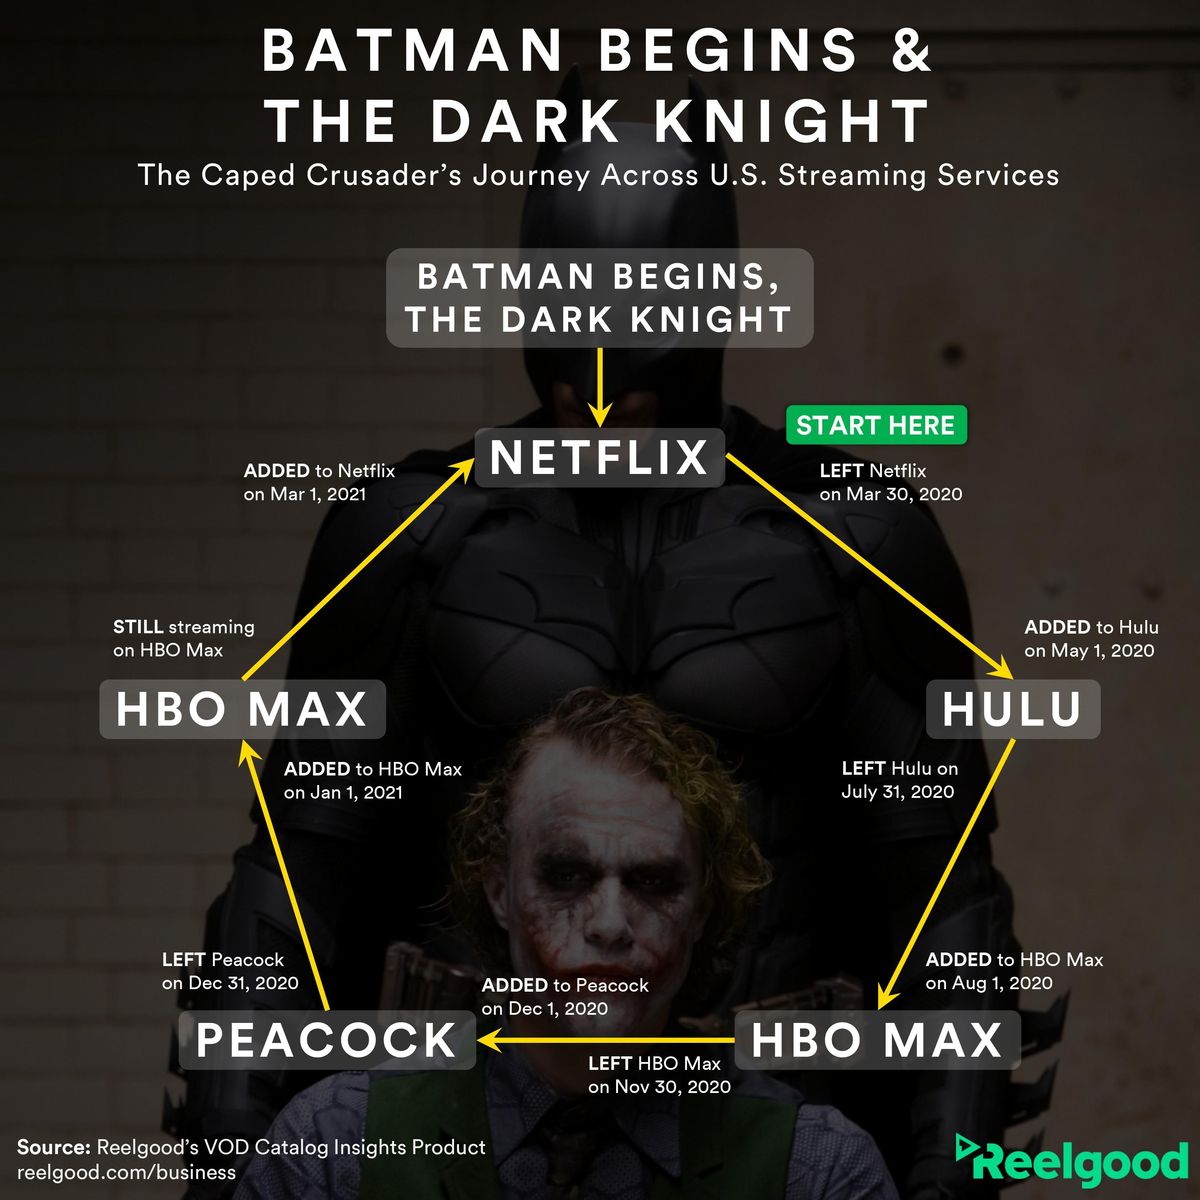 Tukaj je prikazano, kako pogosto Batman začne, The Dark Knight je od leta 2020 preklapljal streamerje